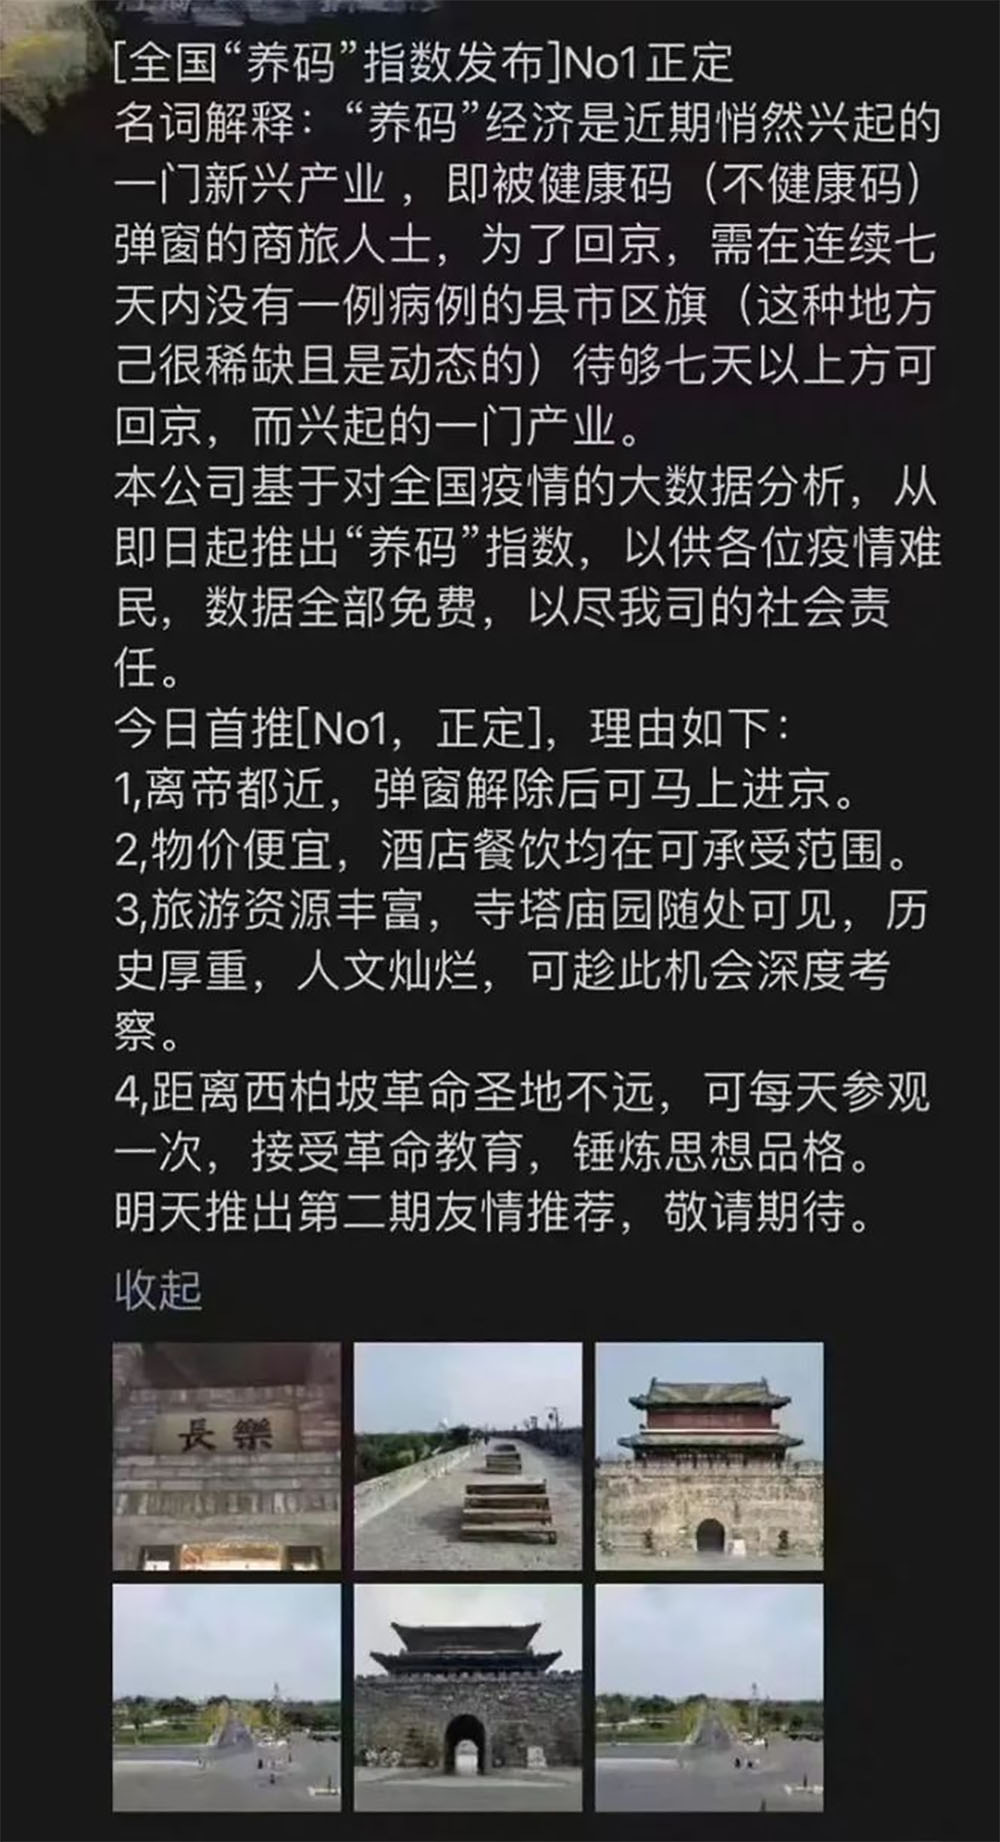 網民解釋推薦河北石家莊的正定縣的原因。